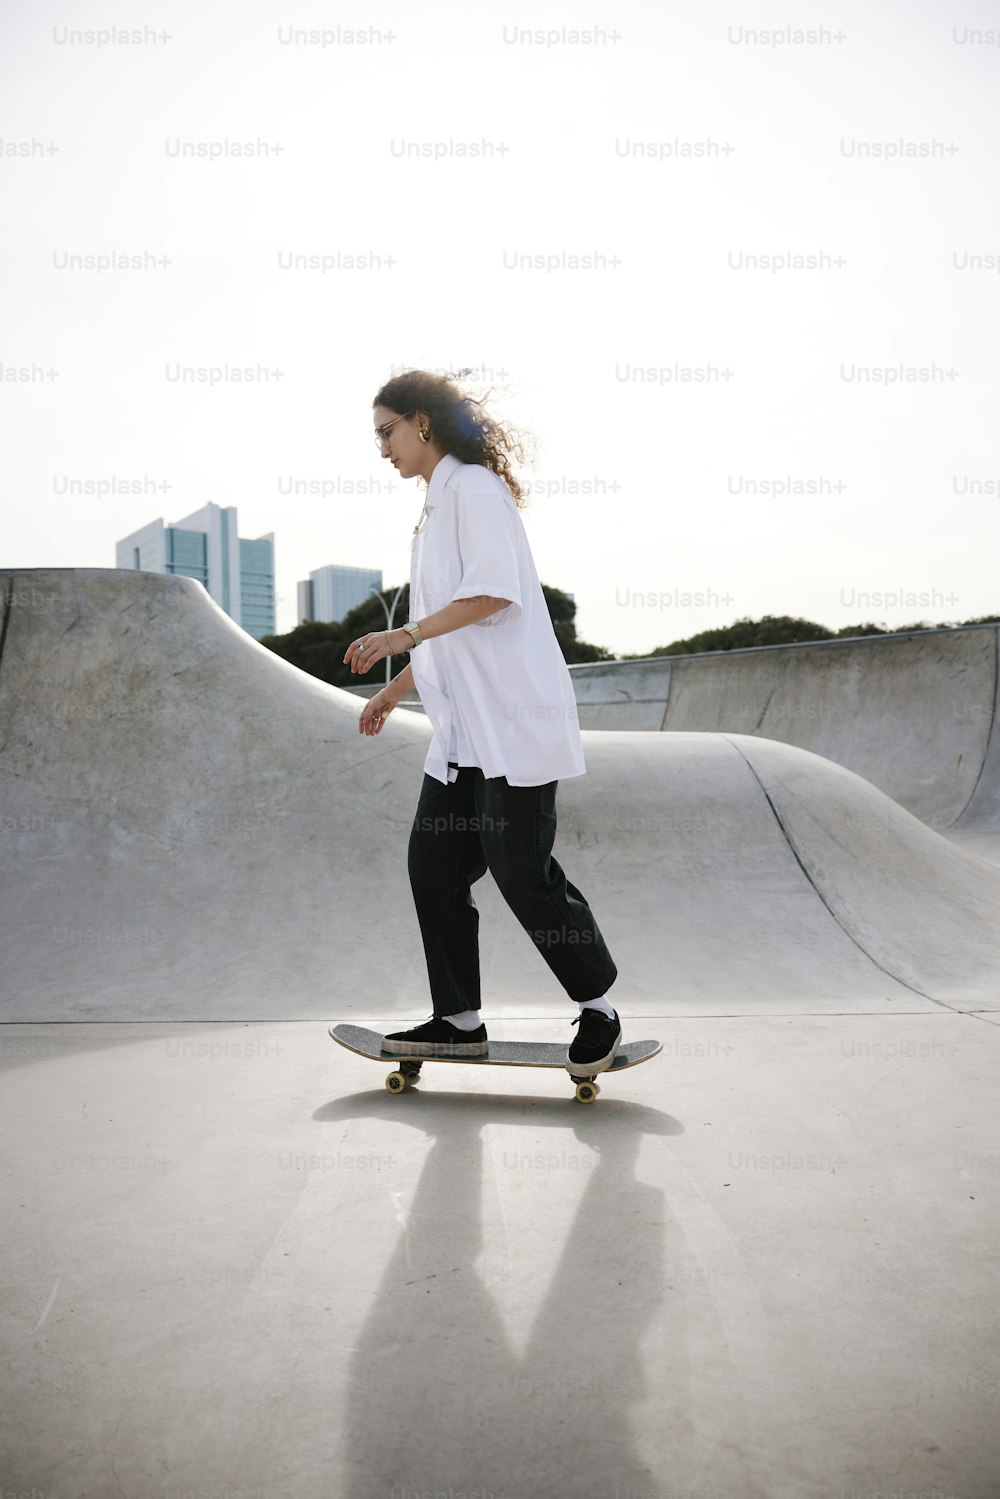 eine Person, die auf einem Skateboard auf einer Rampe fährt